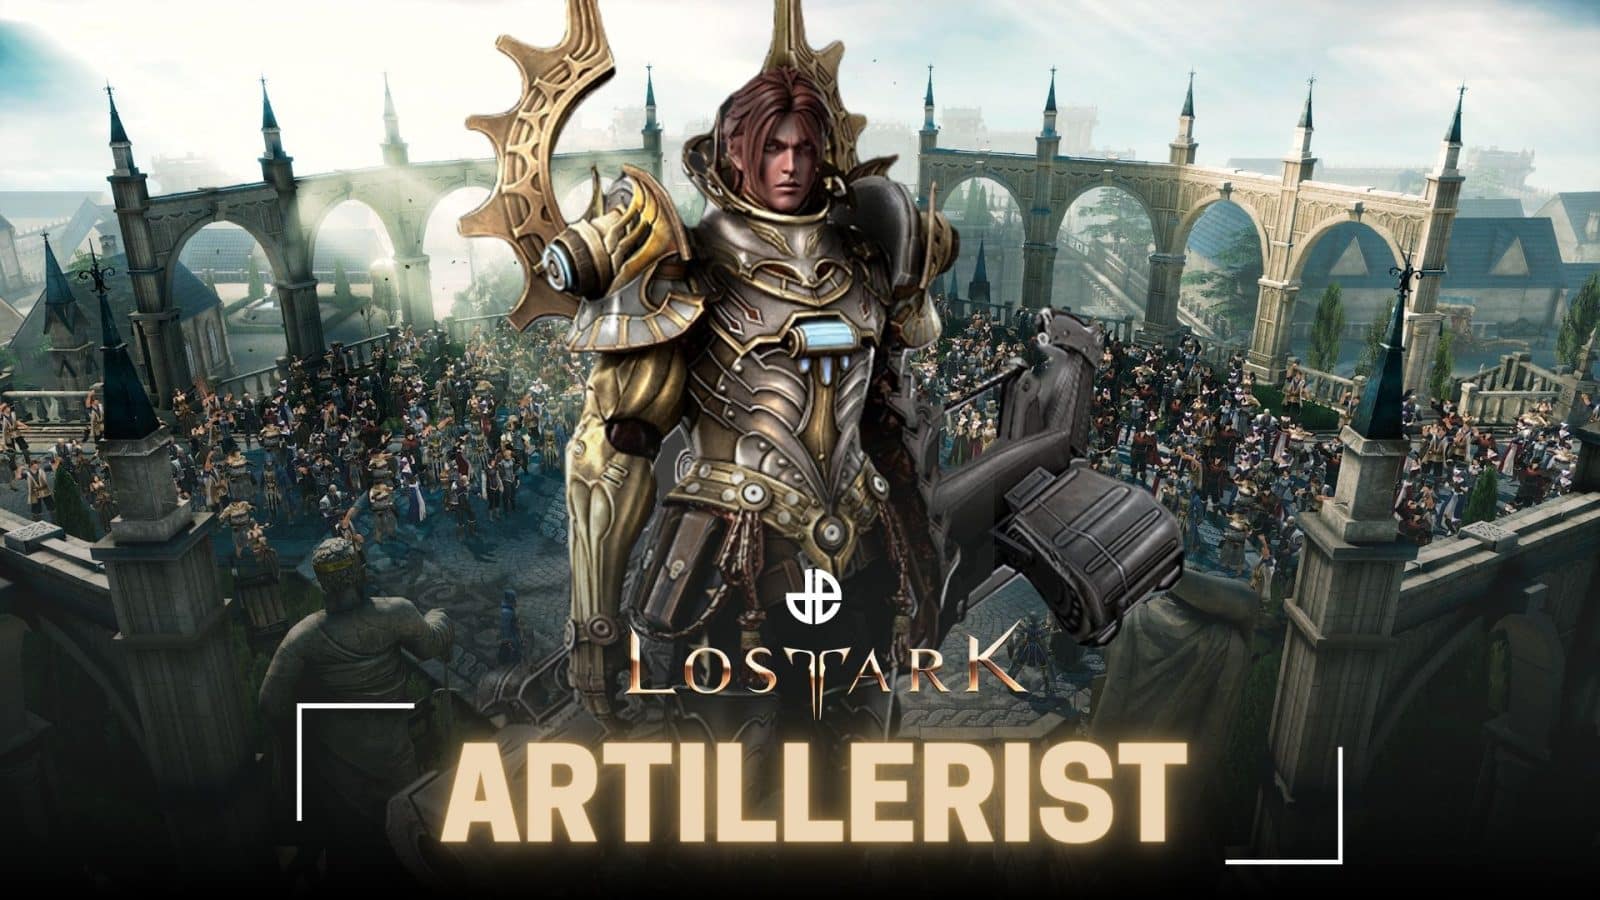 lost ark artillerist builds image pvp pve pvpve